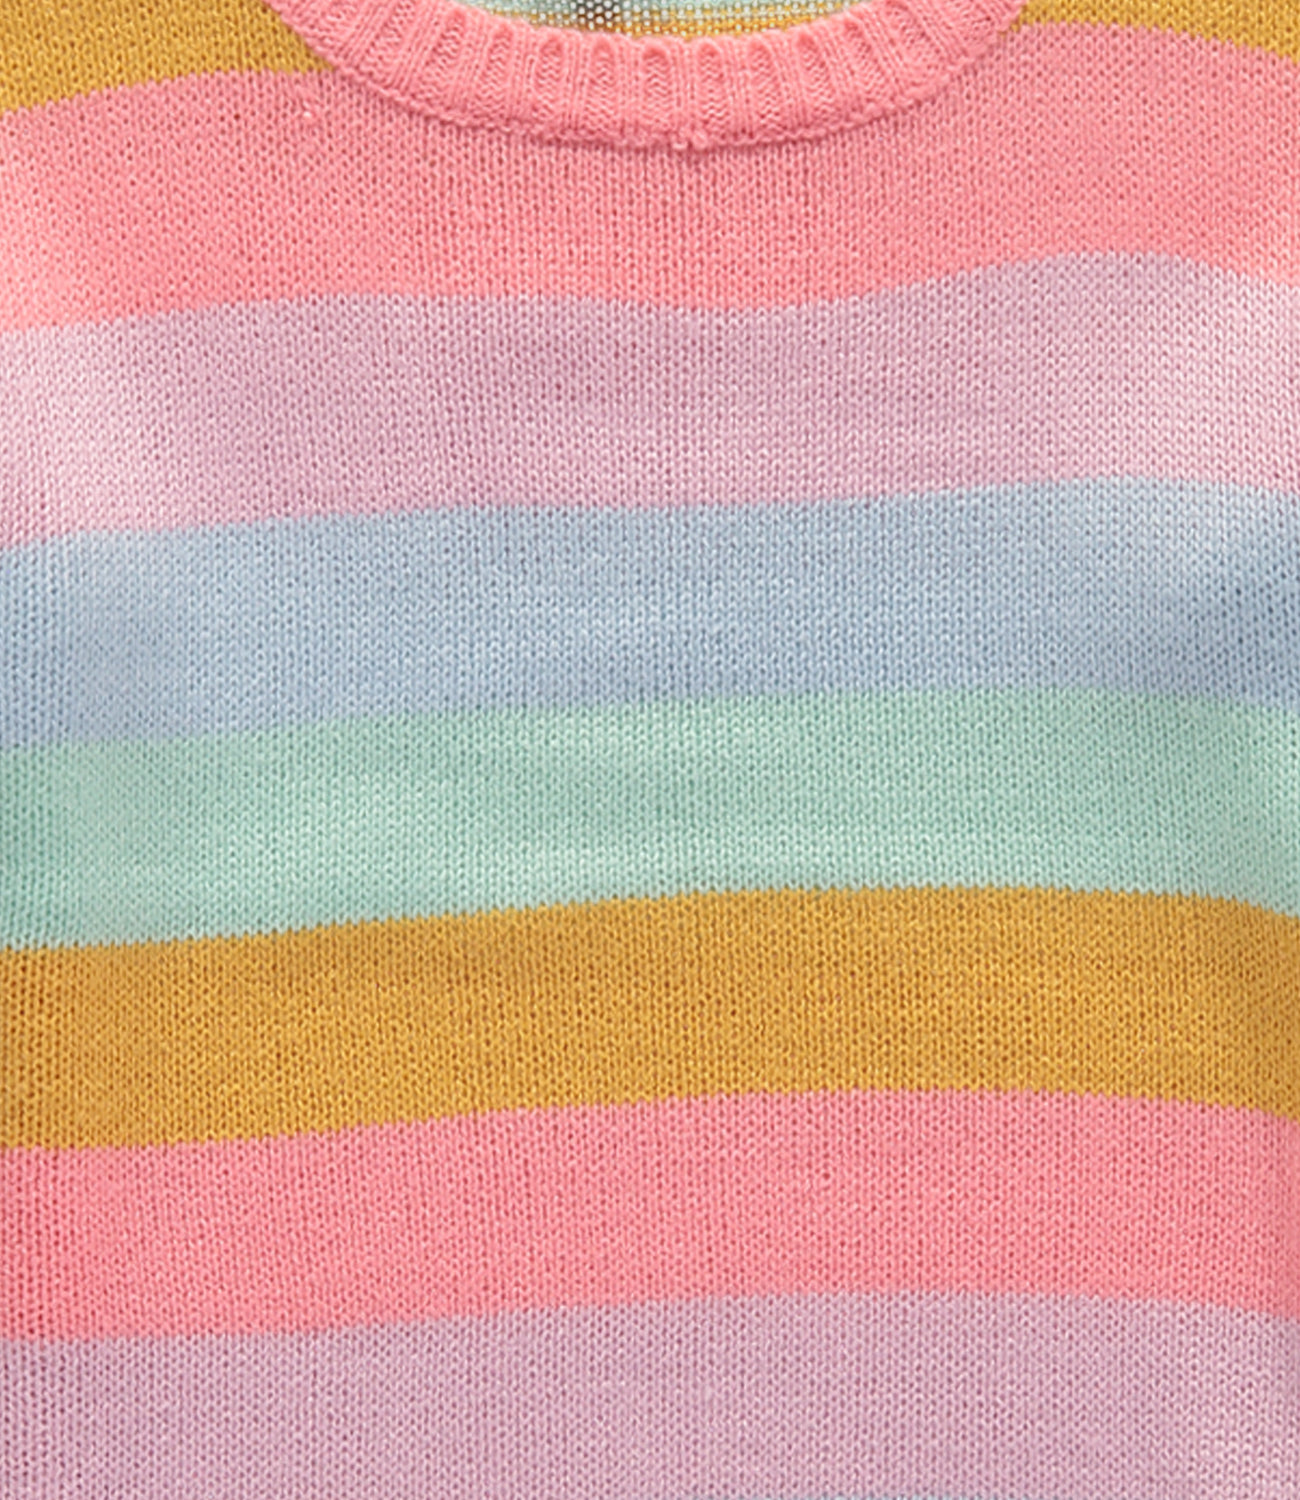 Derek Heart Girls 4-6X Colorblock Stripe Sweater